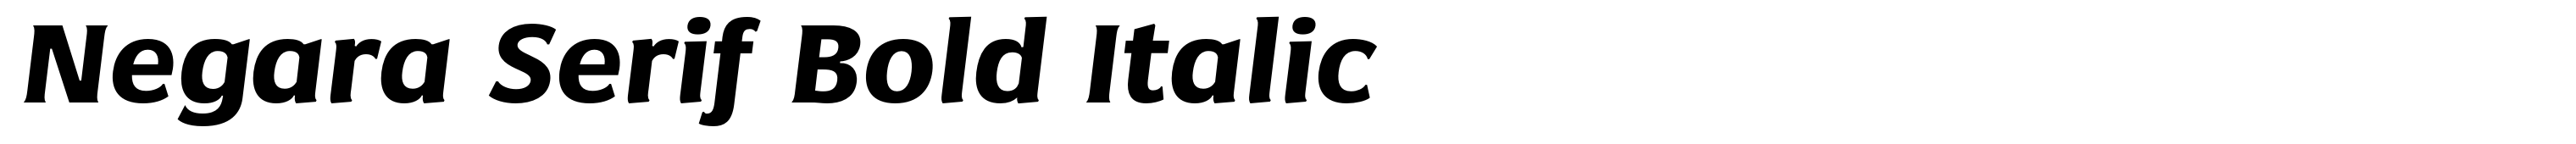 Negara Serif Bold Italic